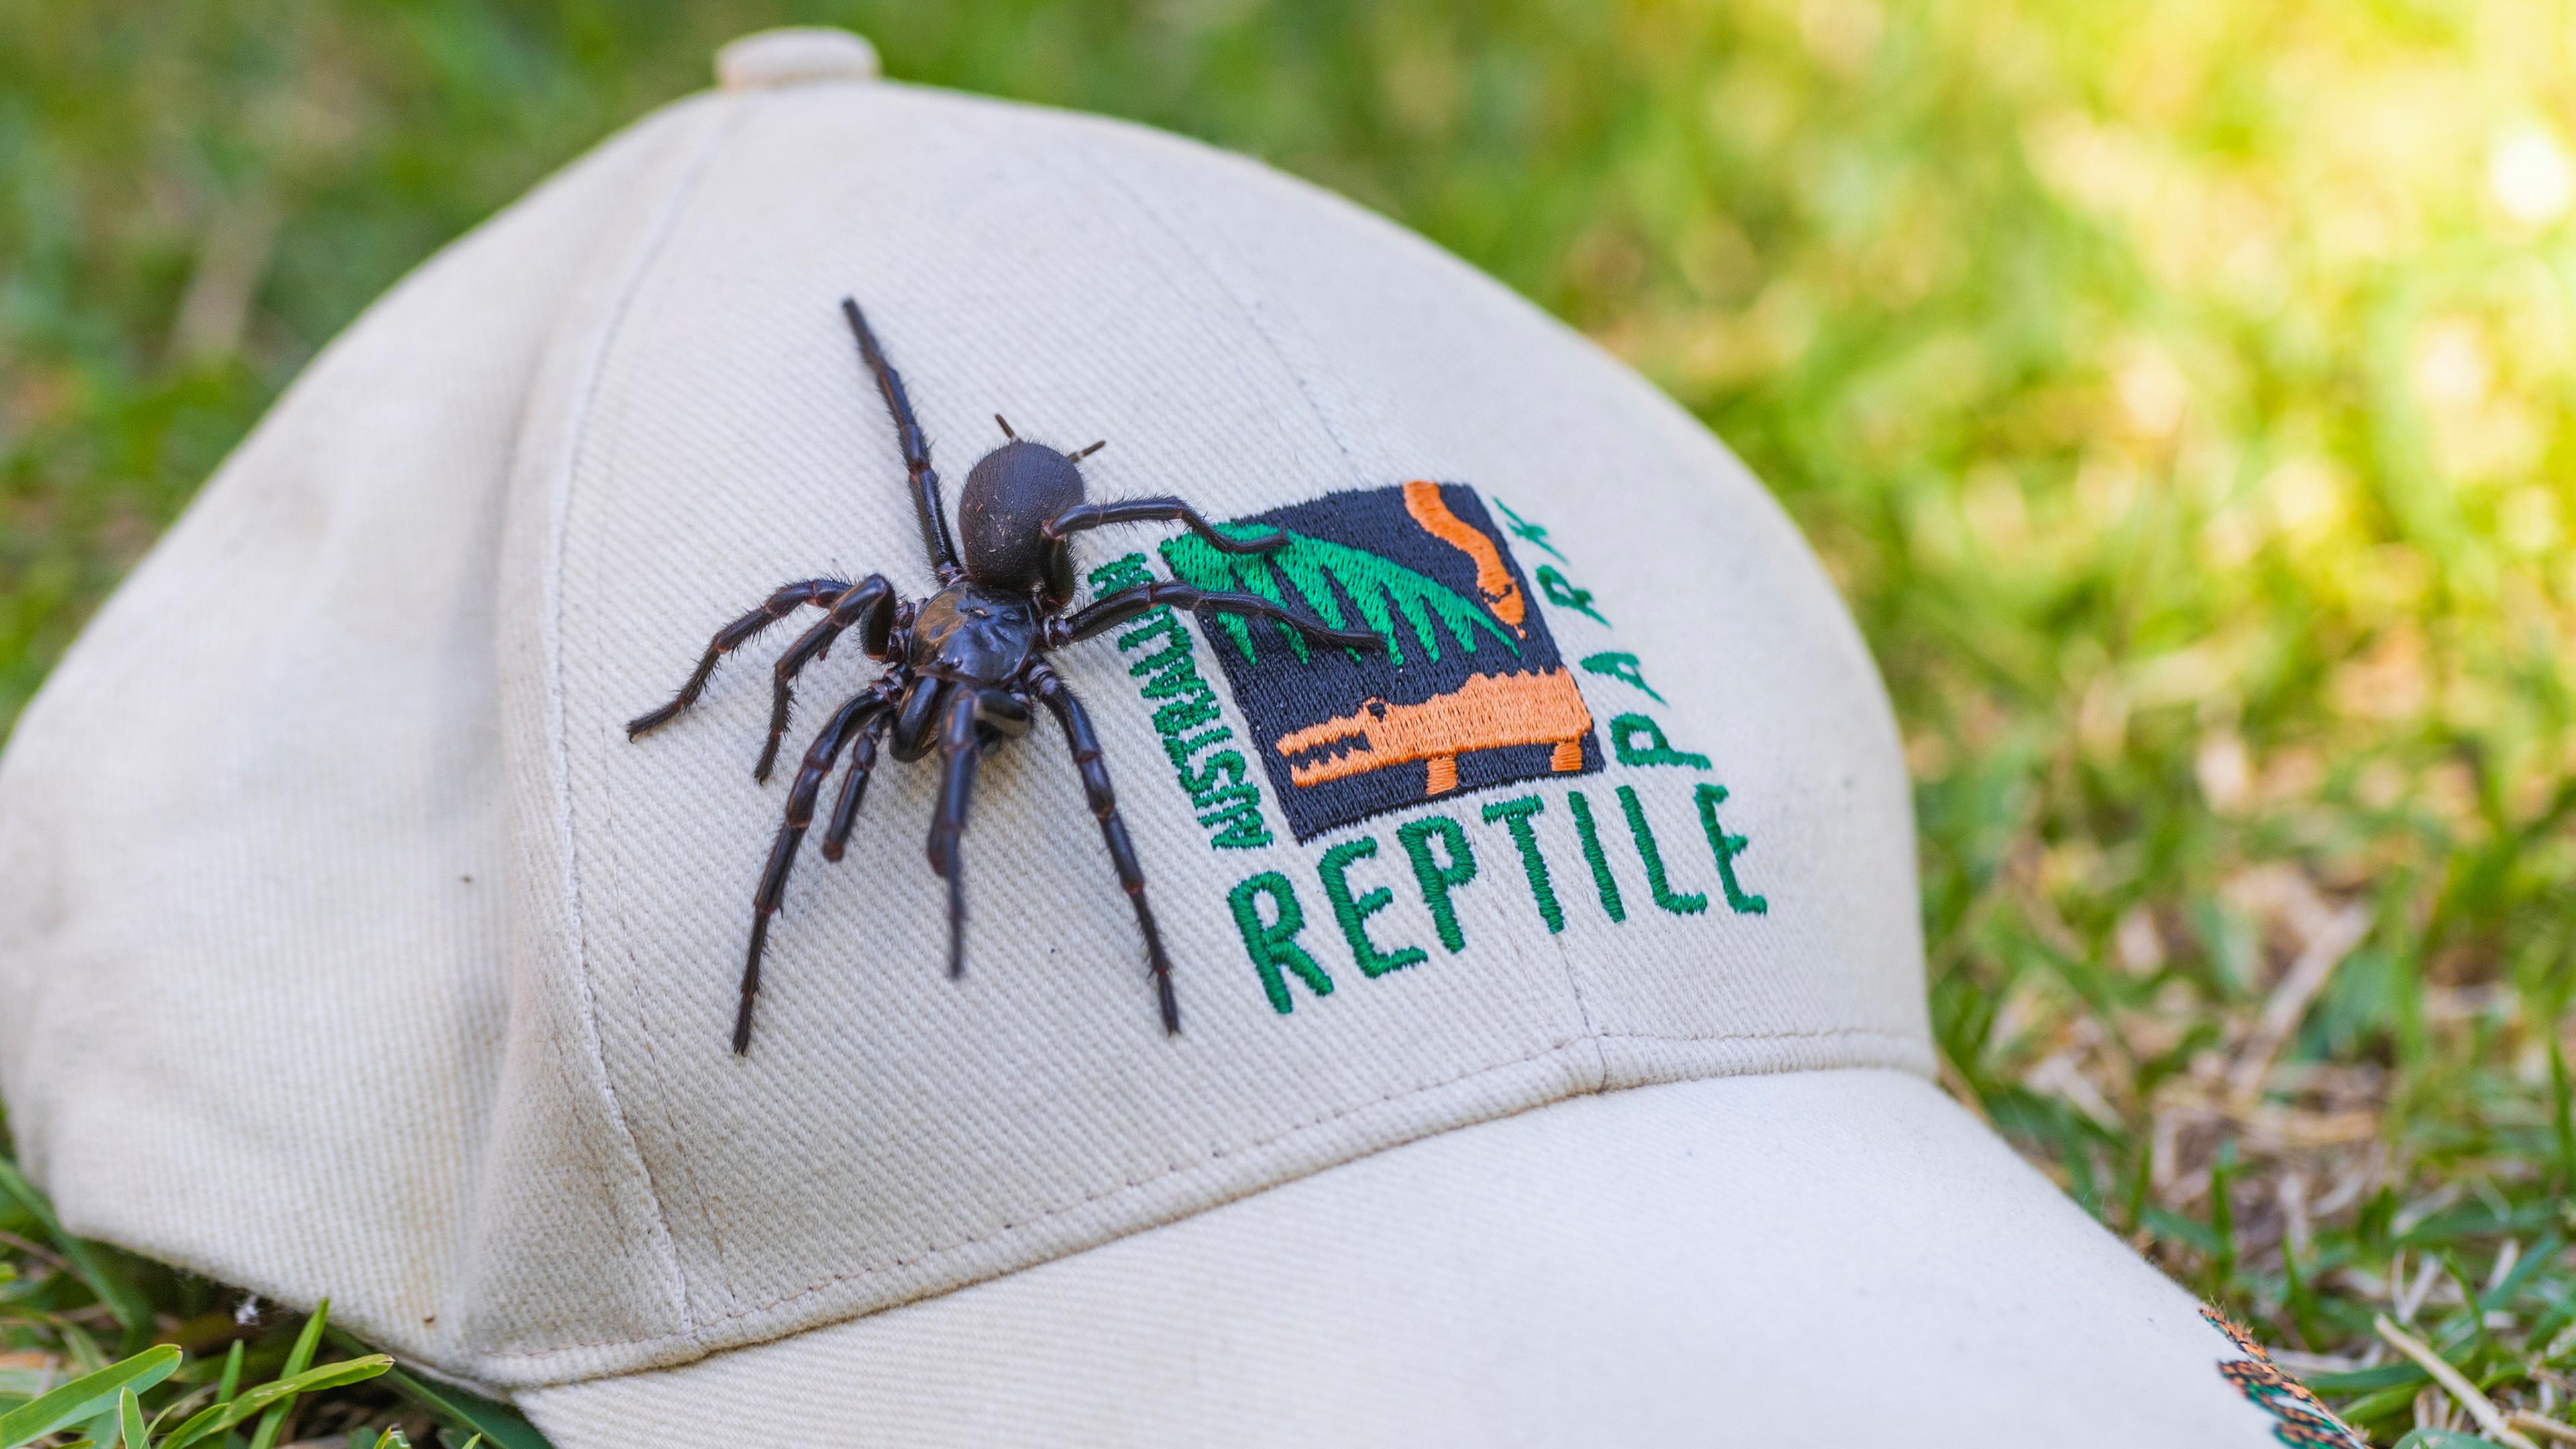 Es wurde ein männliches Exemplar der Sydney Funnel-Web Spinne, dem giftigsten Spinnentier der Welt, gefunden und dem Australian Reptile Park nördlich von Sydney gespendet.